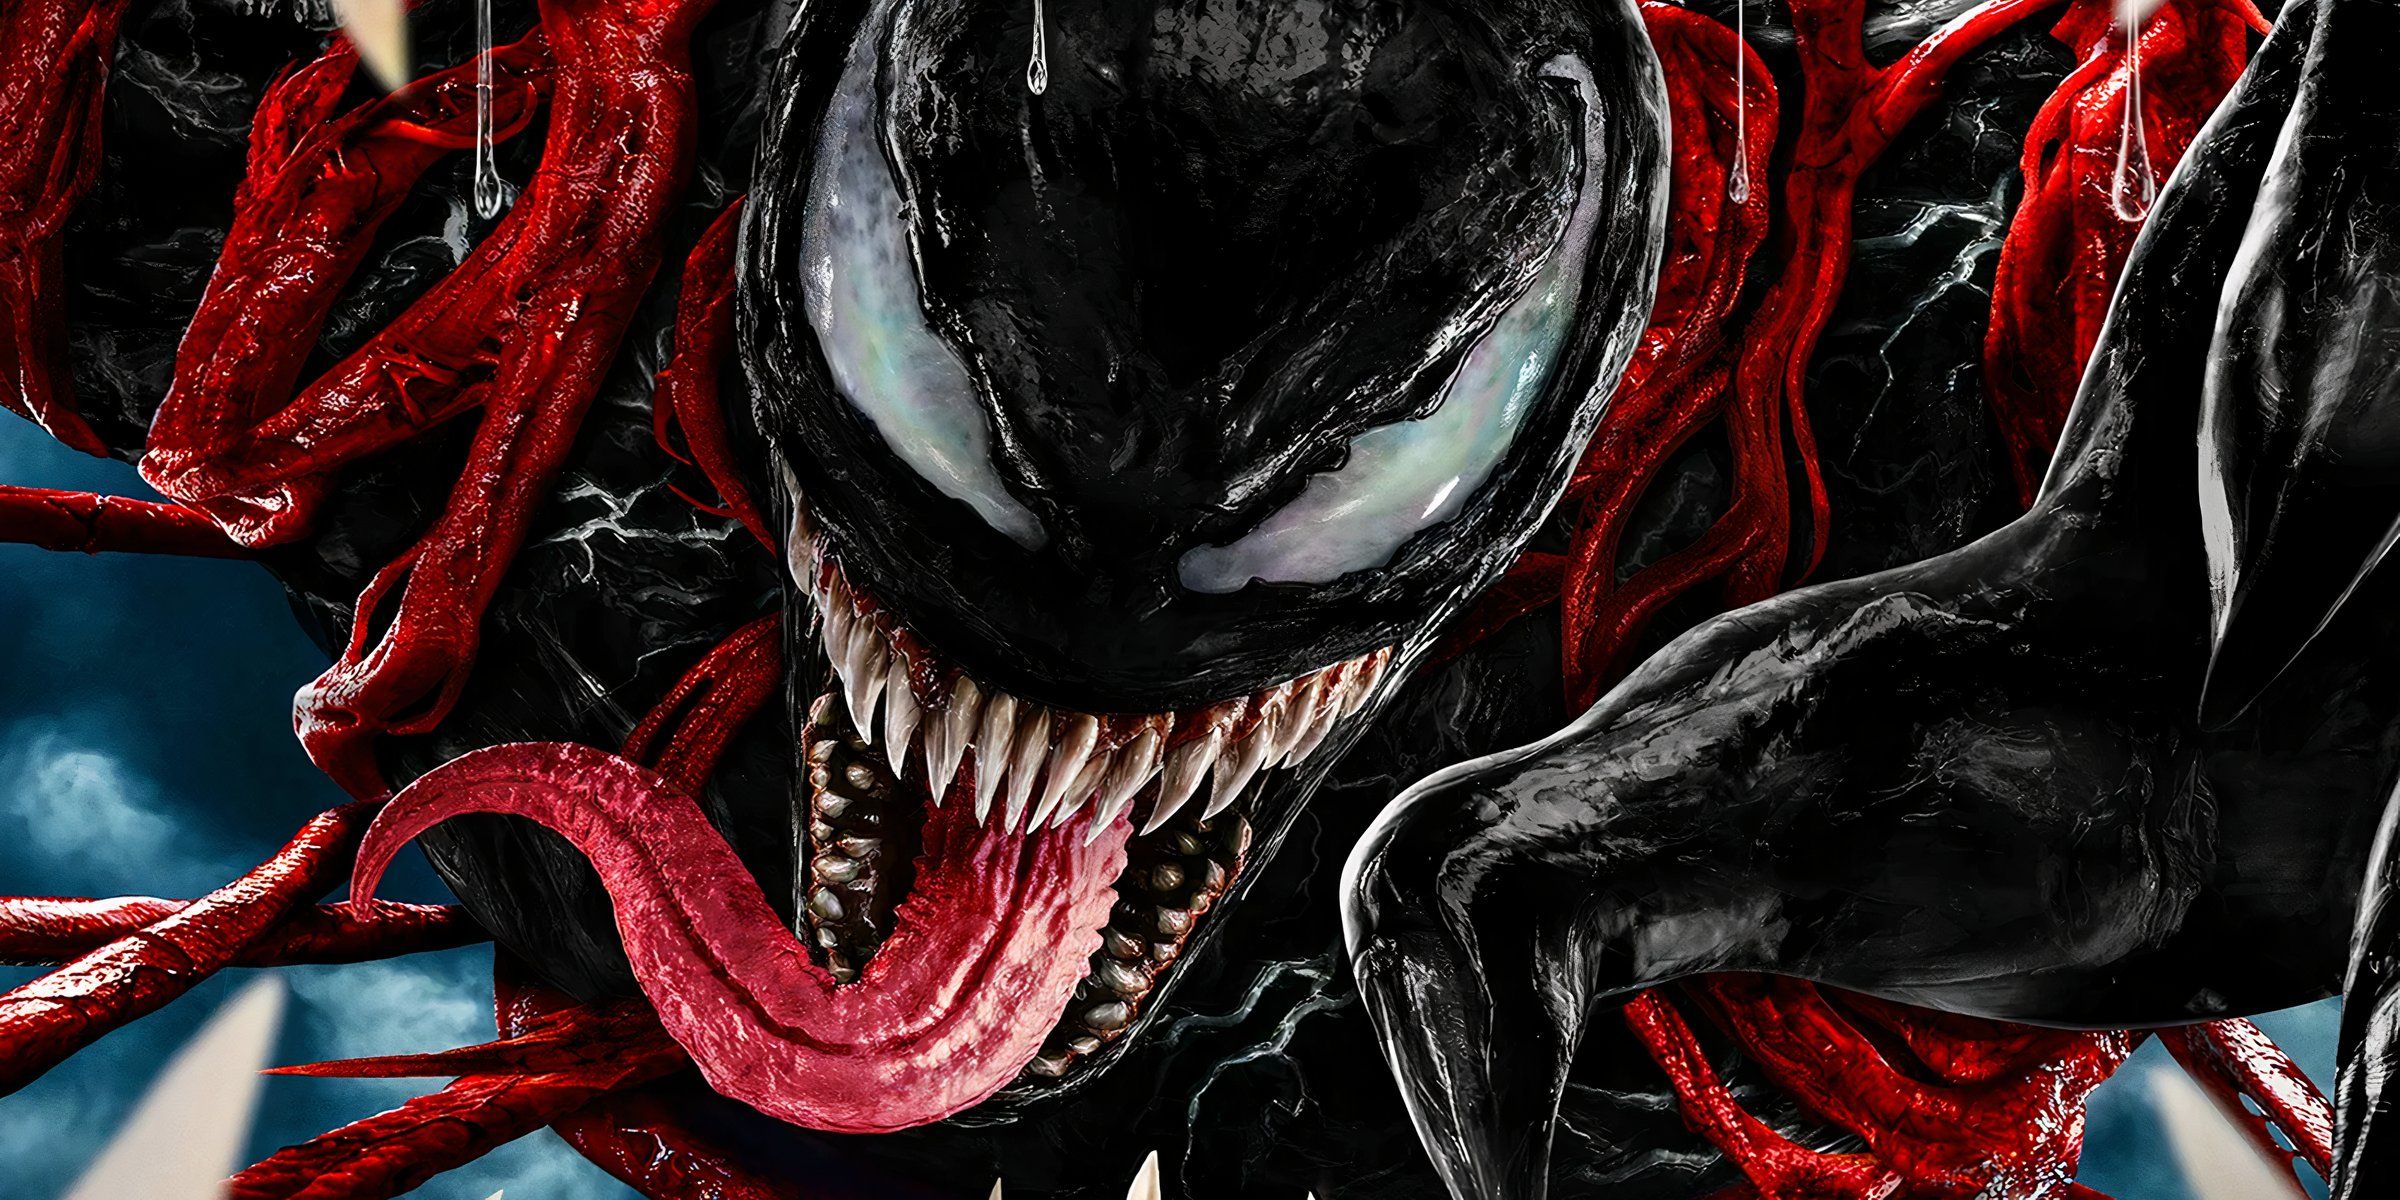 A close up of Tom Hardy's Venom